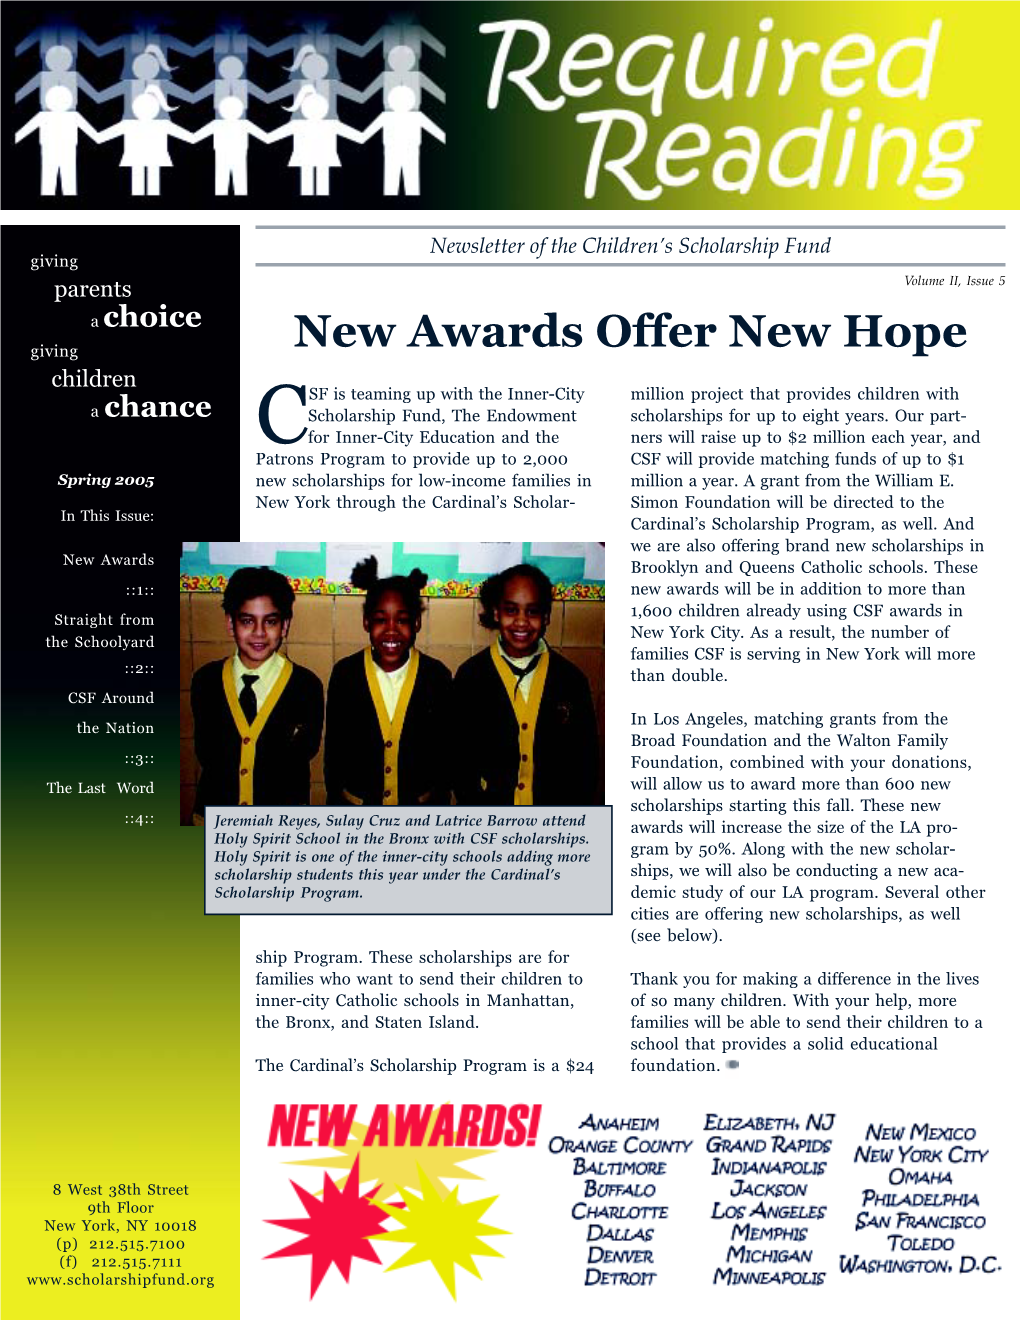 New Awards Offer New Hope